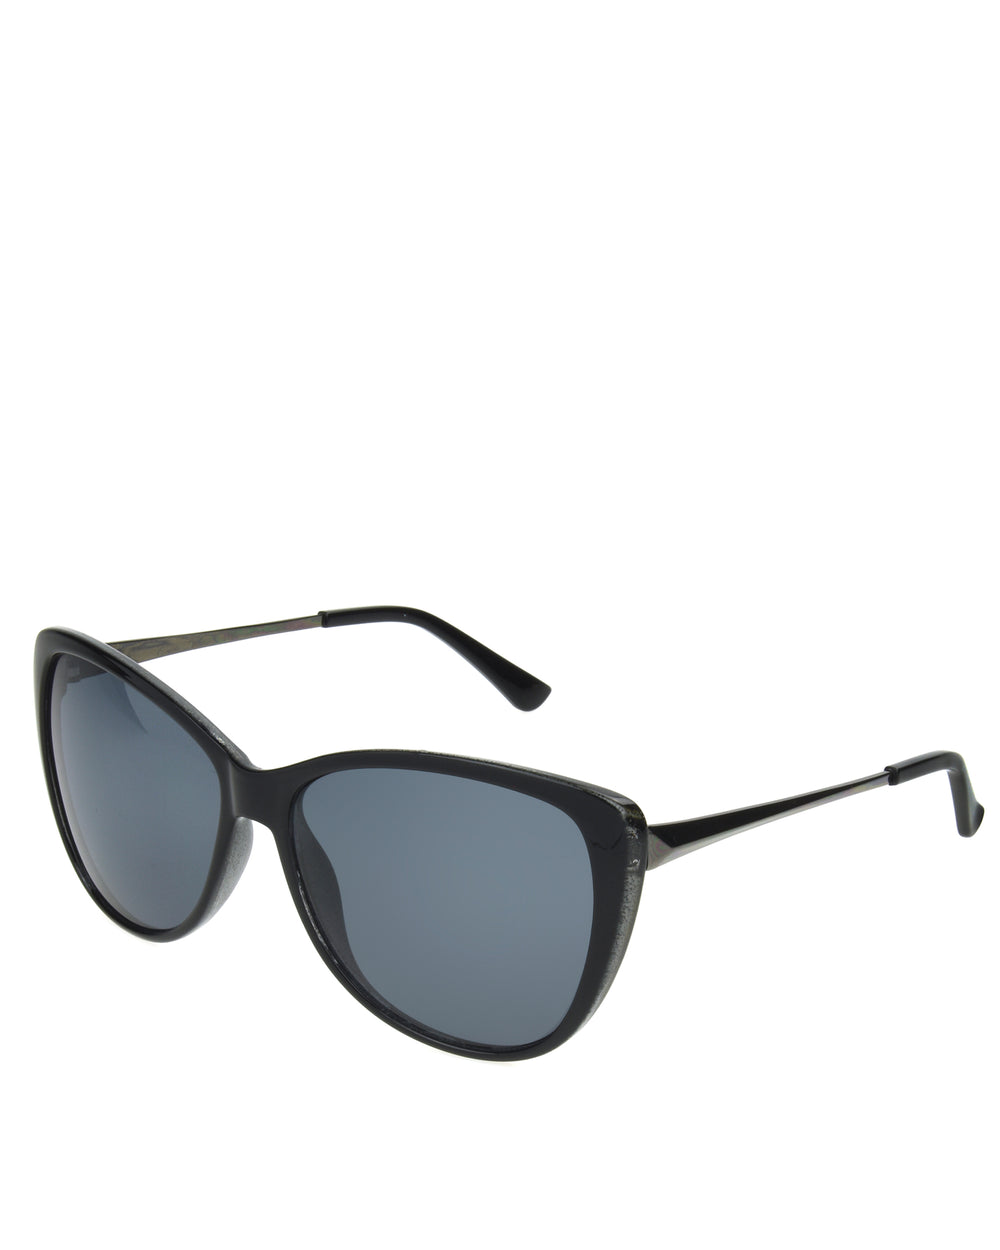 Women's BGL1914 Polarized Cateye Sunglasses - Grey